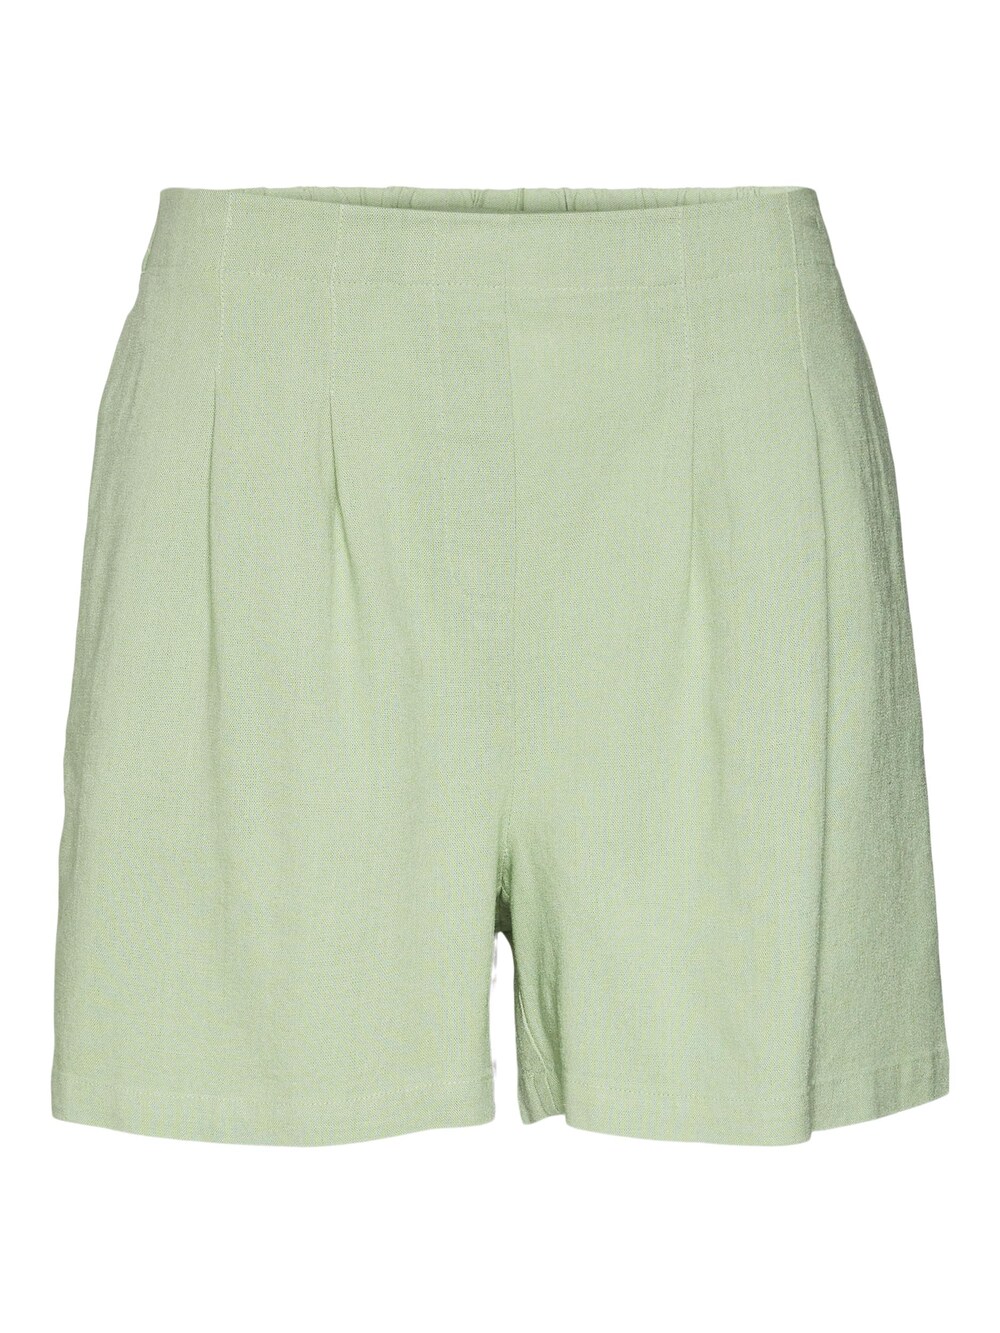 Обычные брюки со складками спереди VERO MODA JESMILO, пастельно-зеленый обычные брюки vero moda girl octavia пастельно зеленый